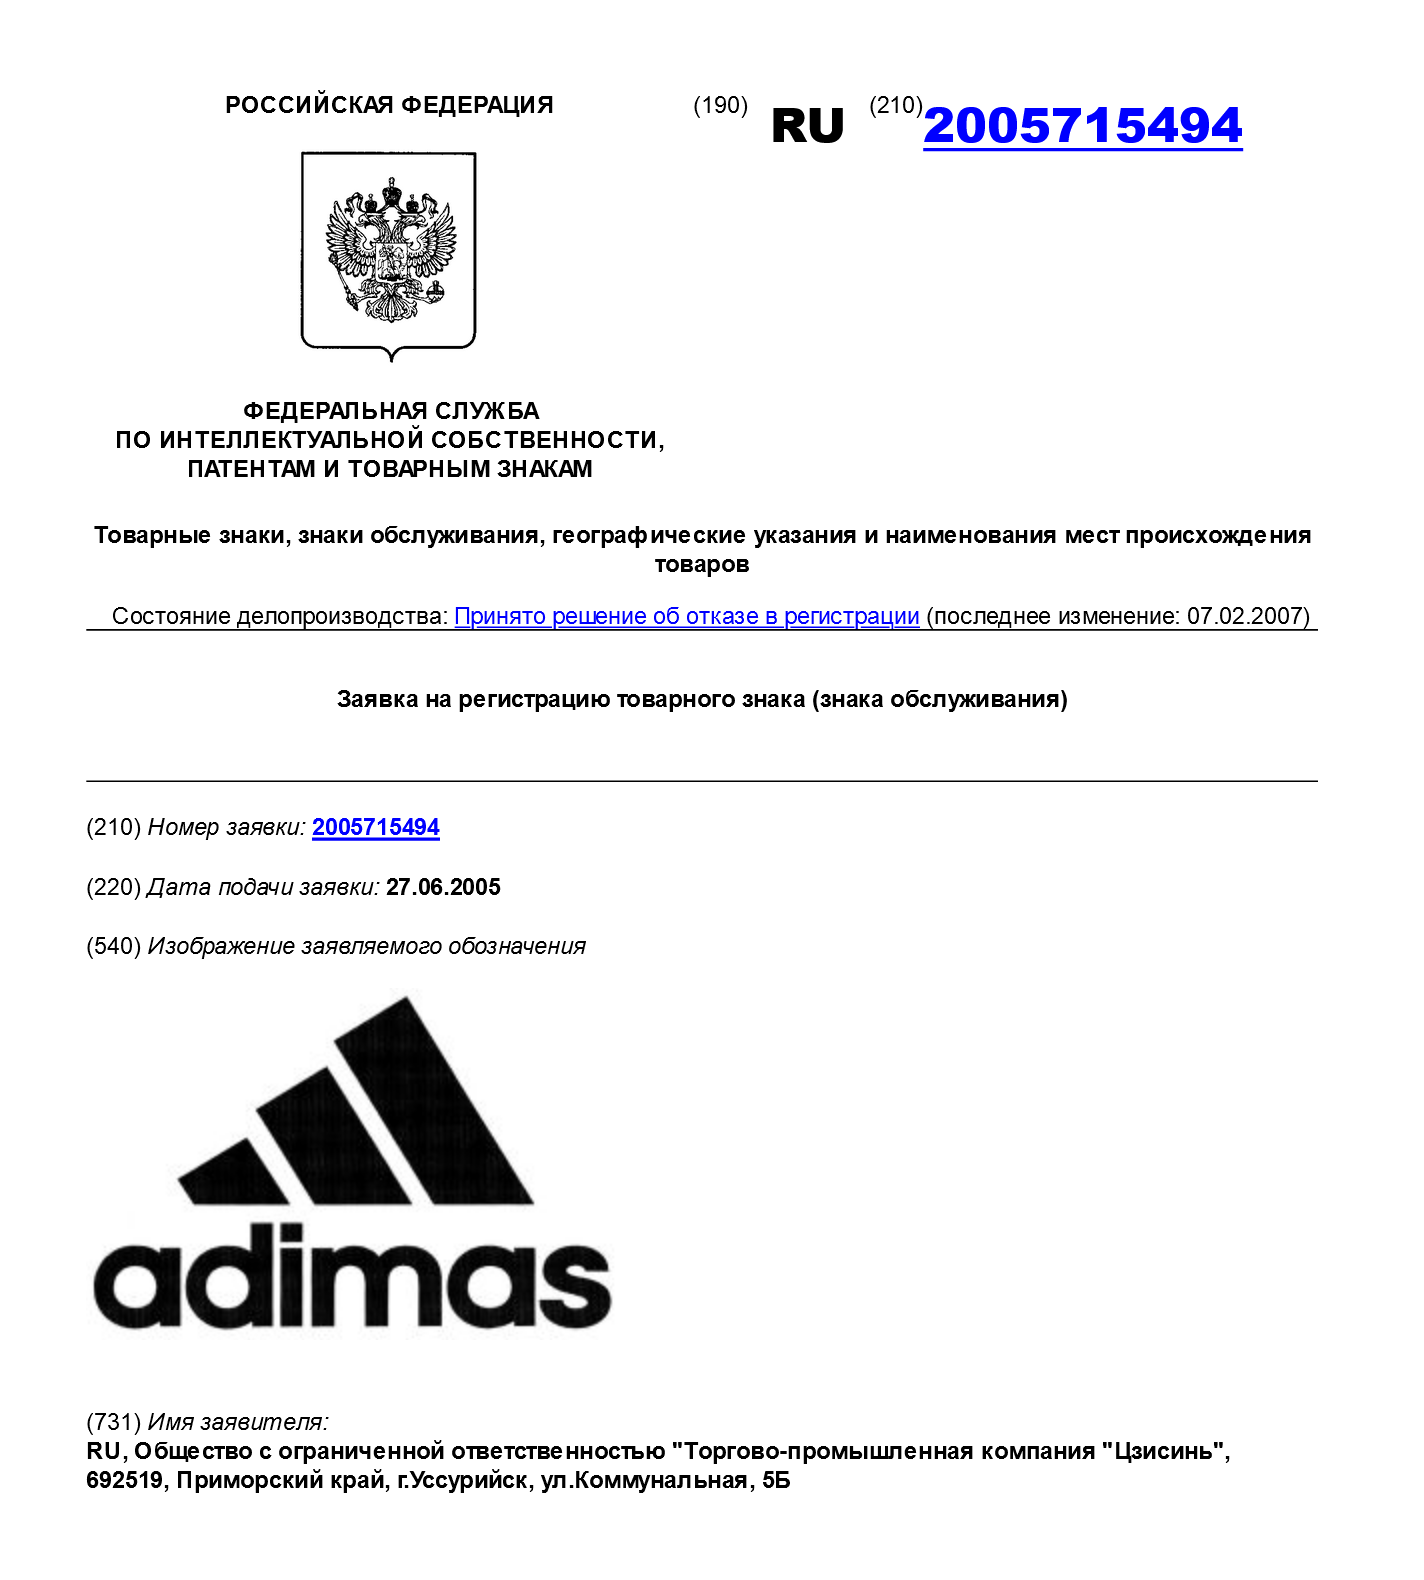 В 2007 году Роспатент отказал в регистрации товарного знака Adimas — и это лишь один из сотен, если не тысяч подобных случаев